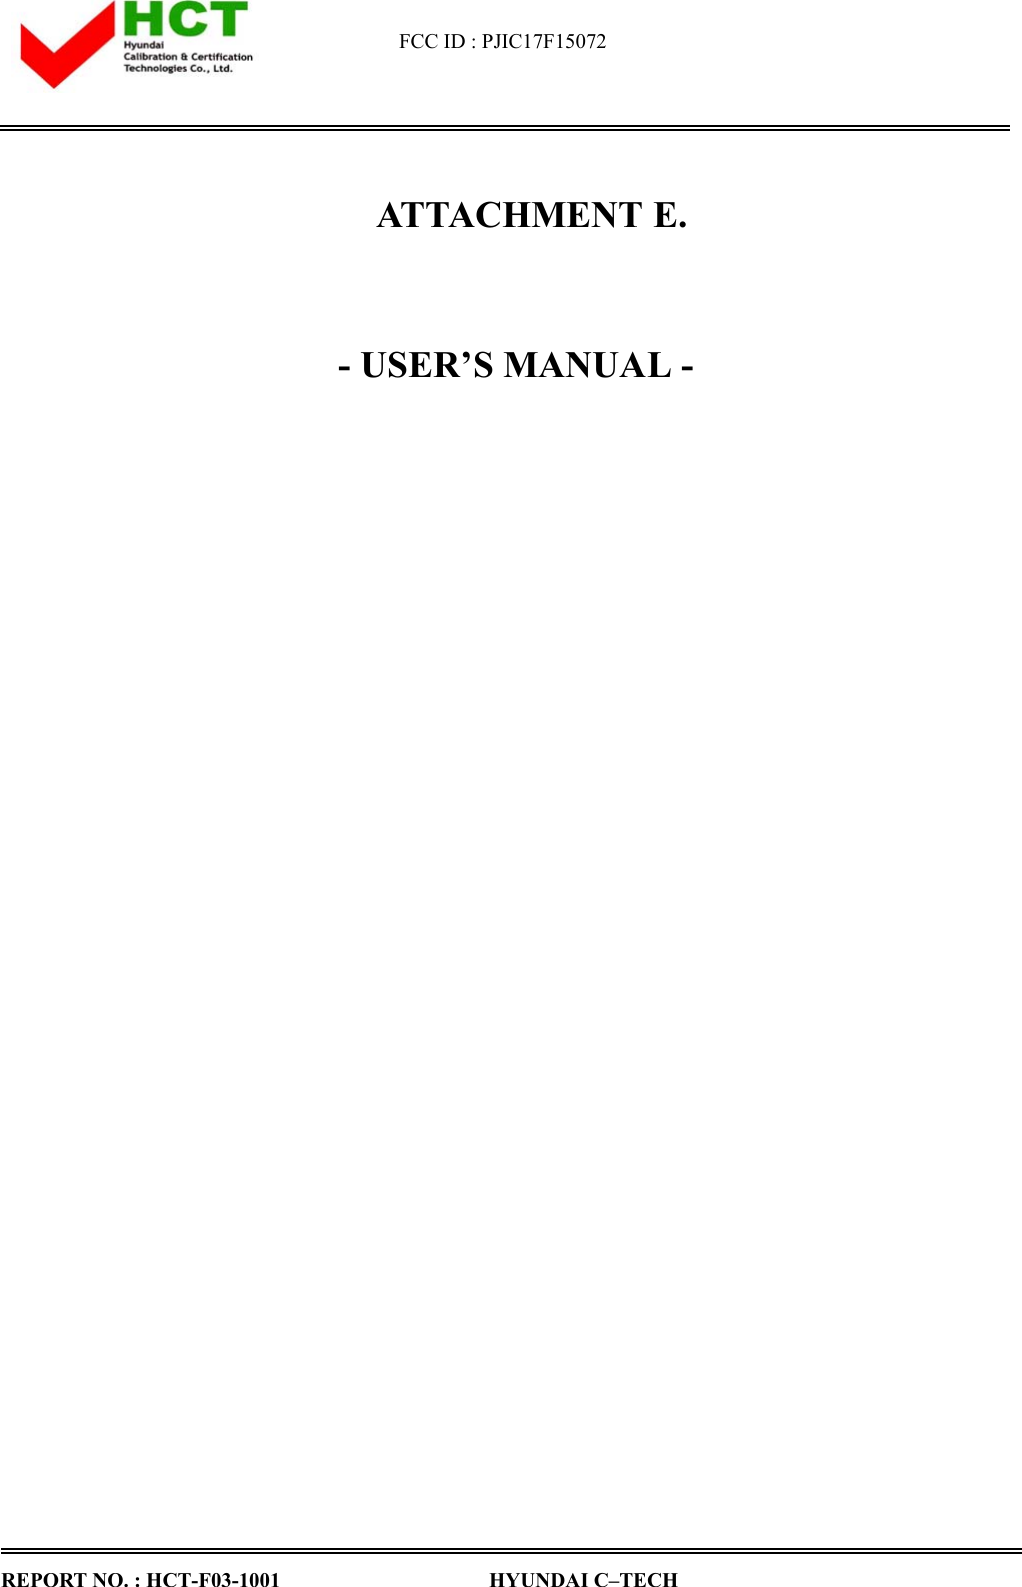 Page 1 of Hyundai IBT C17F15072 CRT Monitor User Manual 1